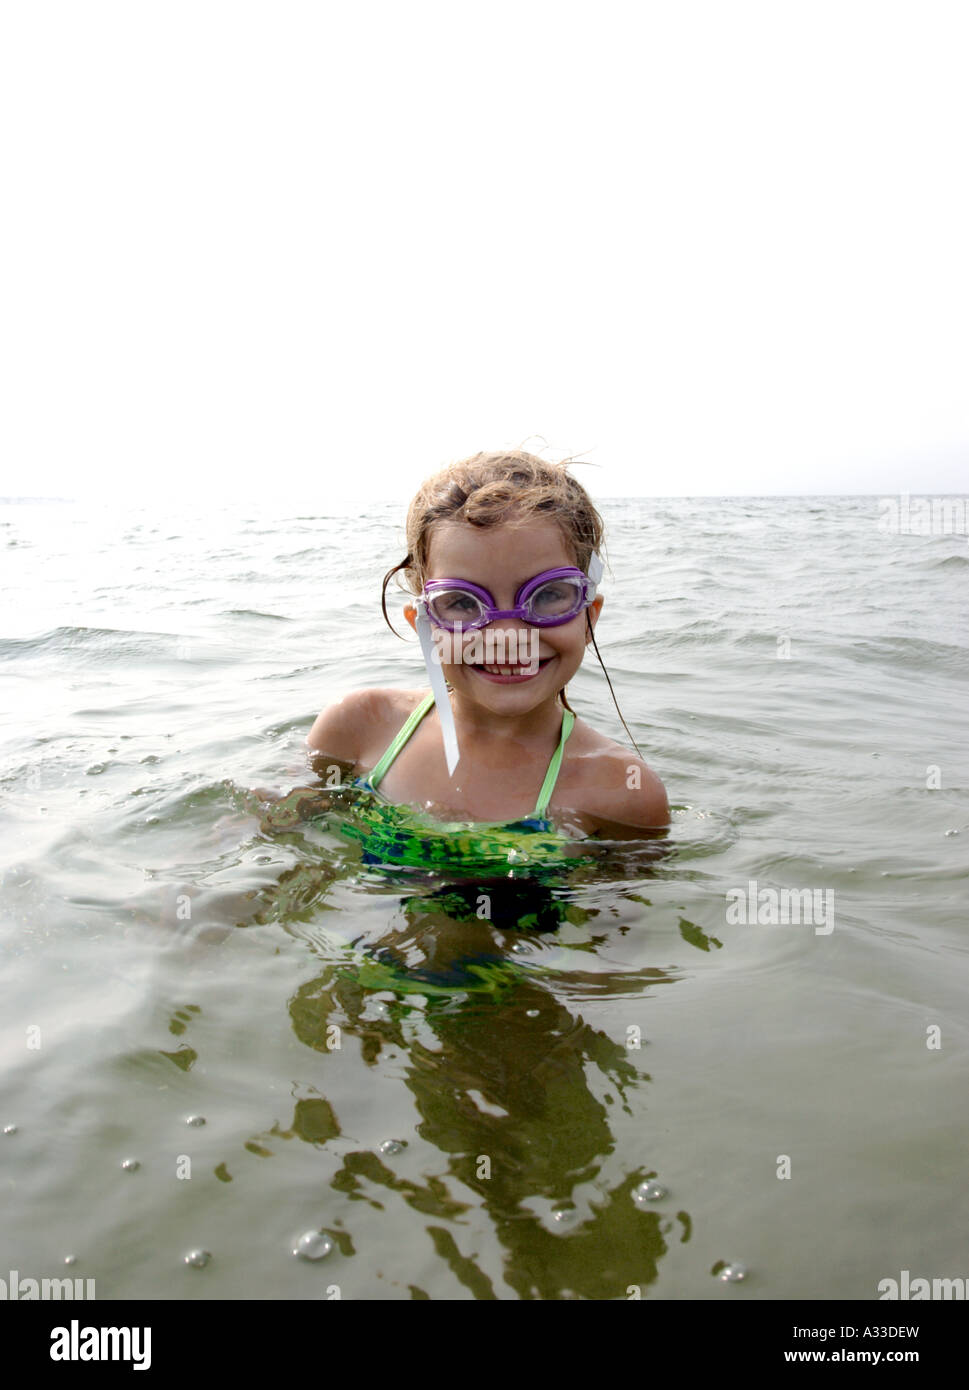 junges Mädchen mit sandigen blonde Haare mit grünen Badeanzug, lila Brillen in den Ozean lächelnd Stockfoto